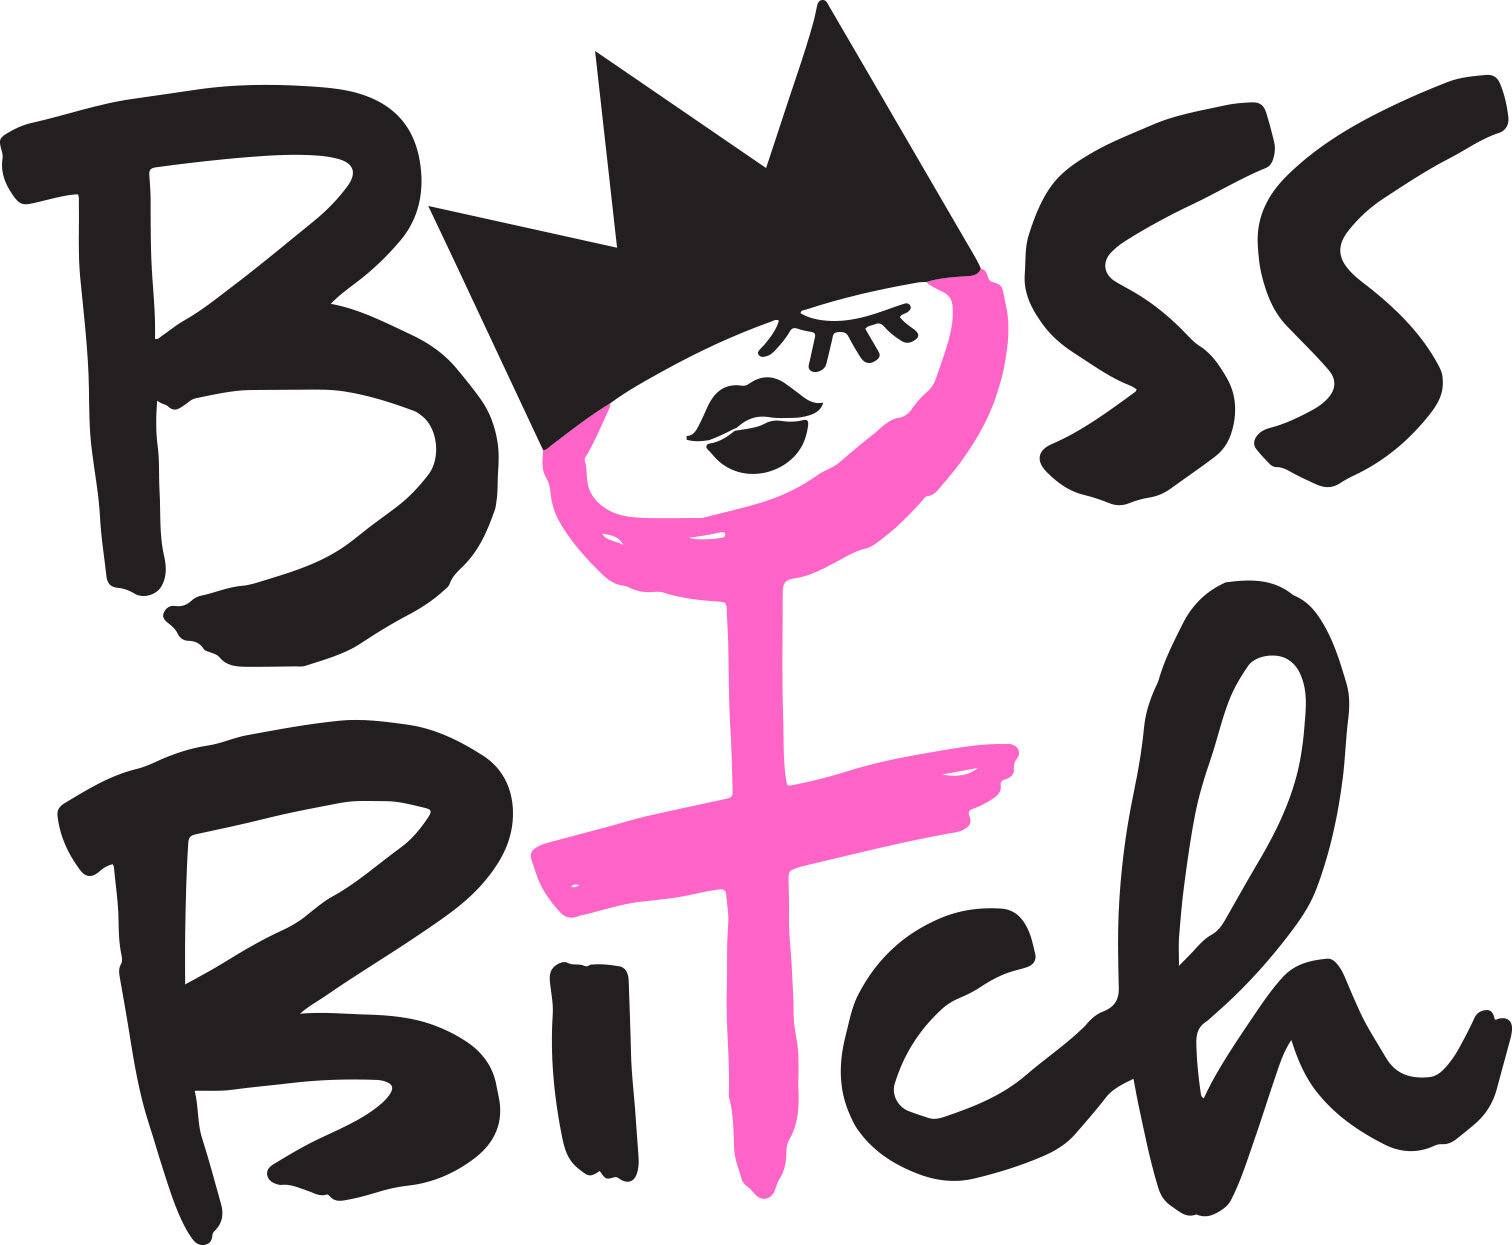 https://images.squarespace-cdn.com/content/v1/5b27d8f59772ae33edc3e8c8/1570644369630-H5TFWMQ9FHG65JQ1JTVO/Boss-Bitch-Logo-Pink.jpg